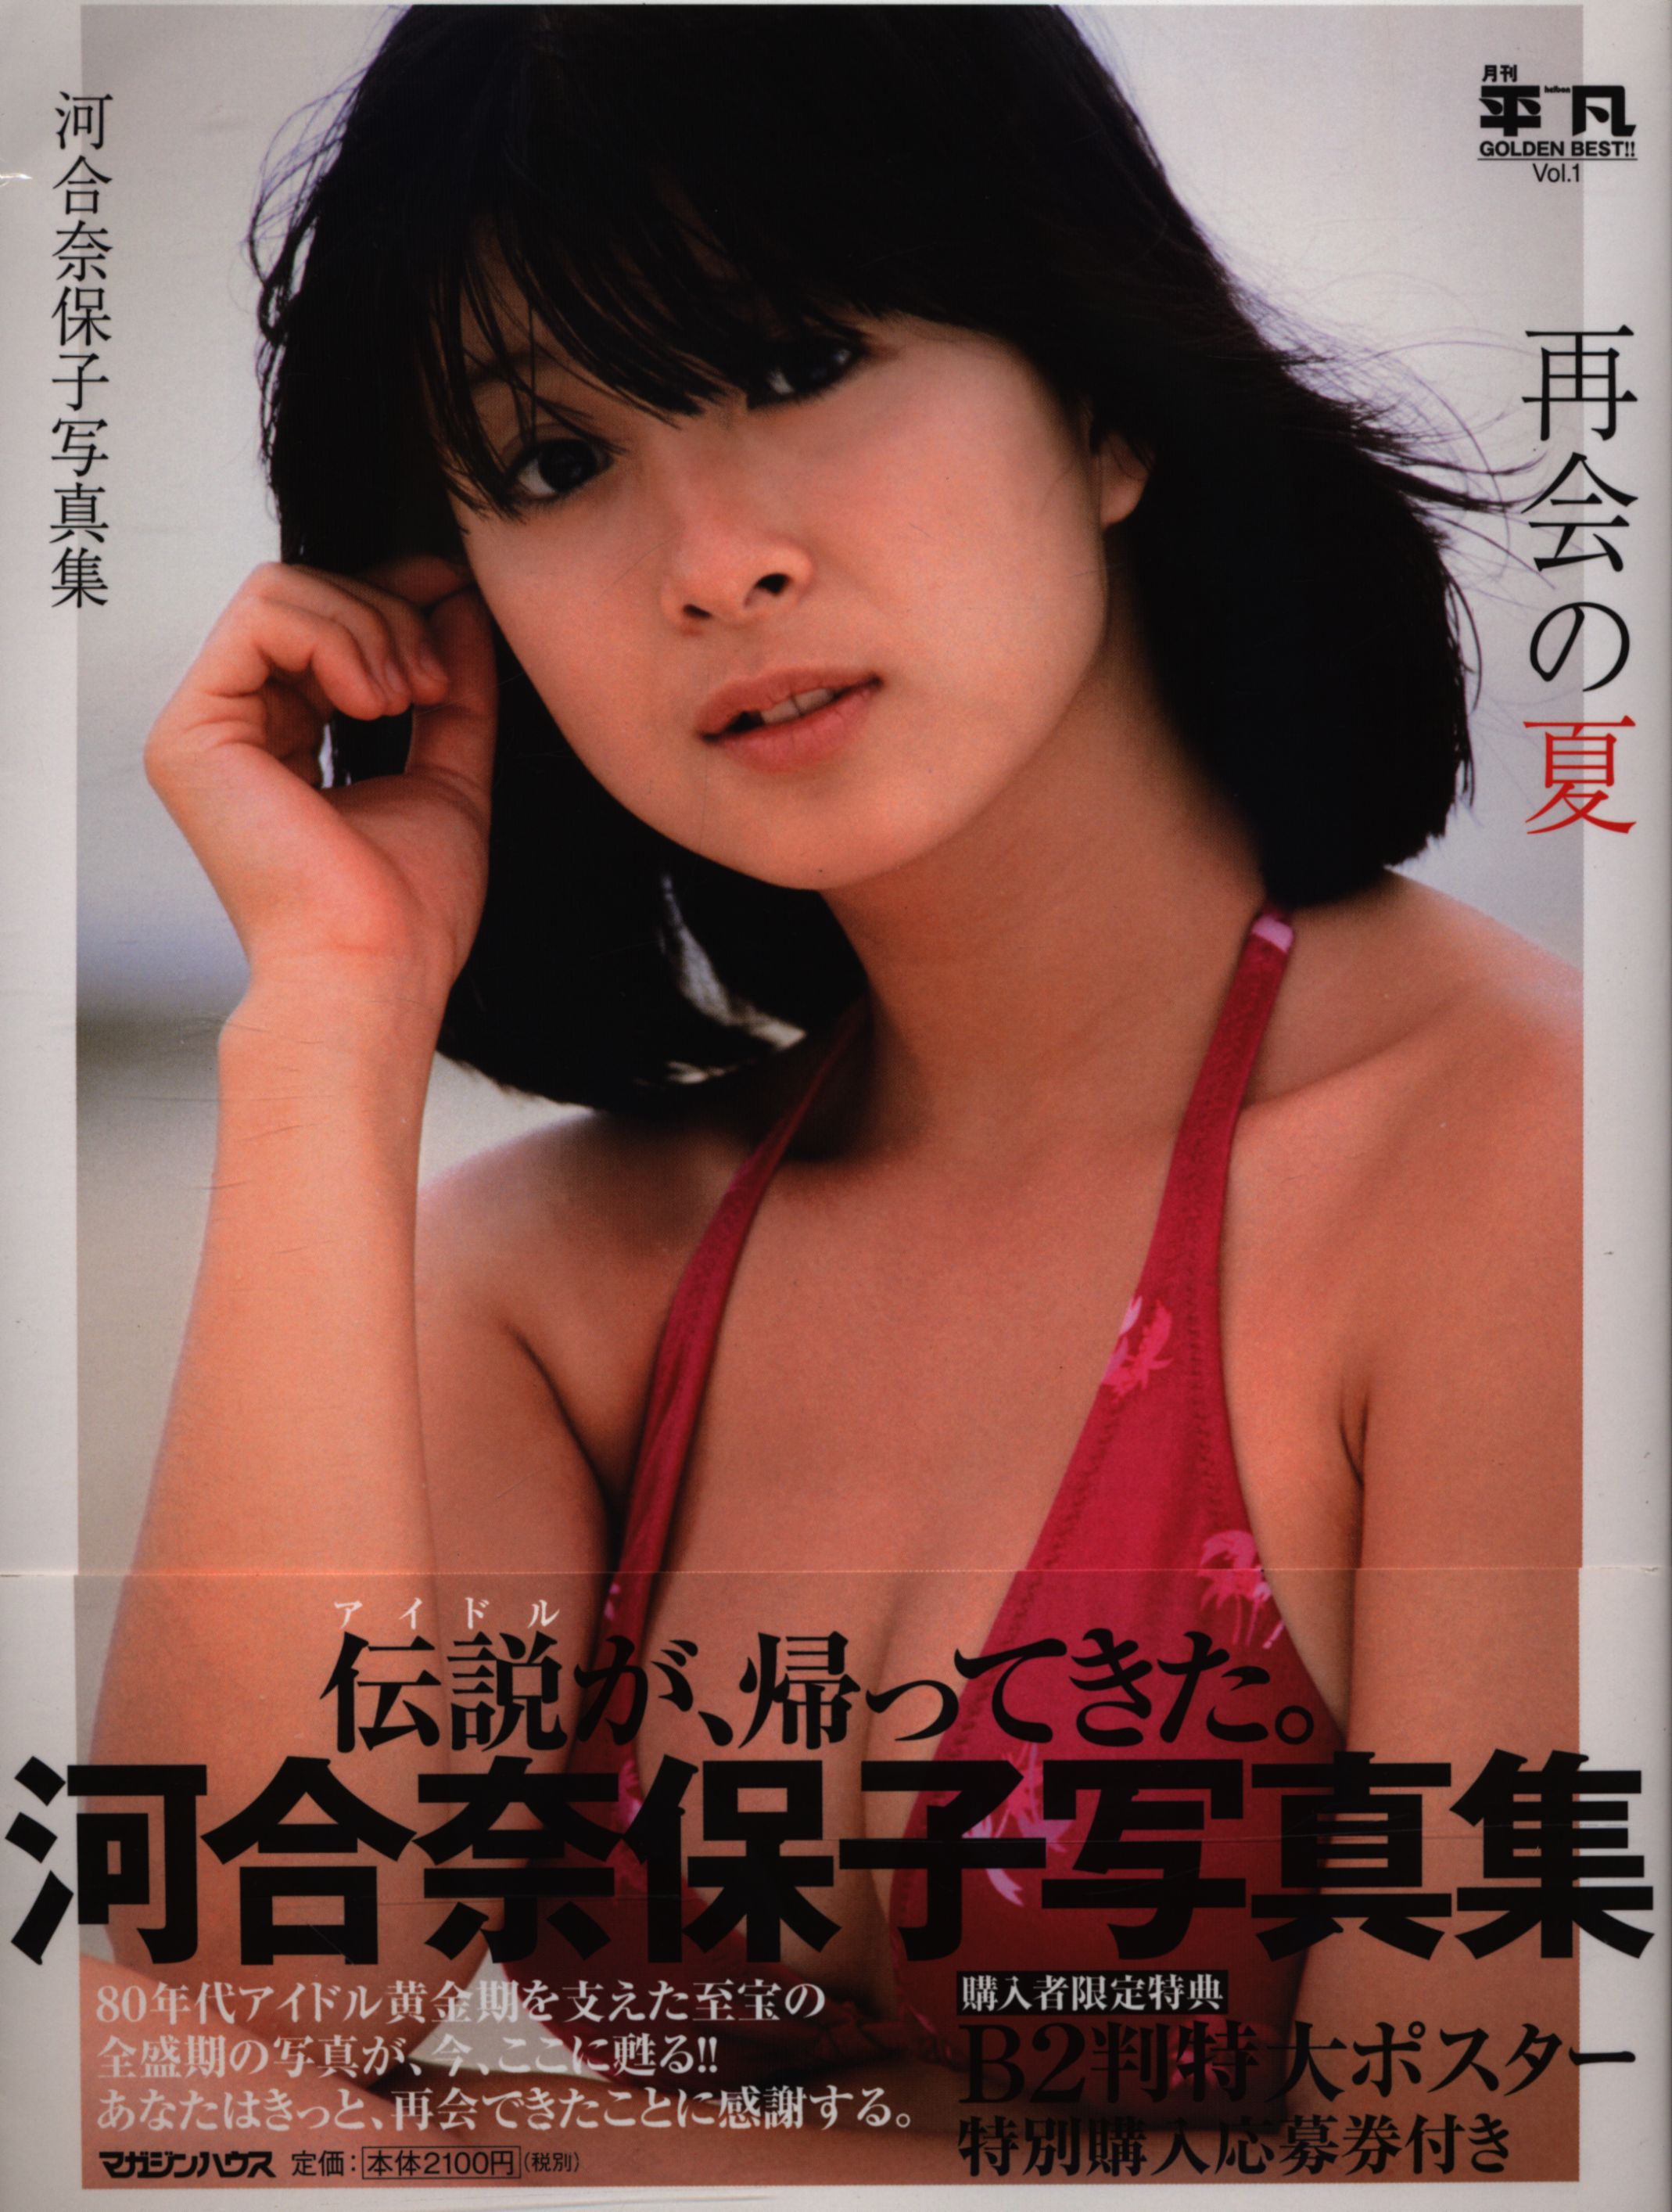 Monthly Mediocre Golden Best Vol 1 Naoko Kawai Naoko Kawai Photograph Collection Summer Of Reunion Mandarake Online Shop